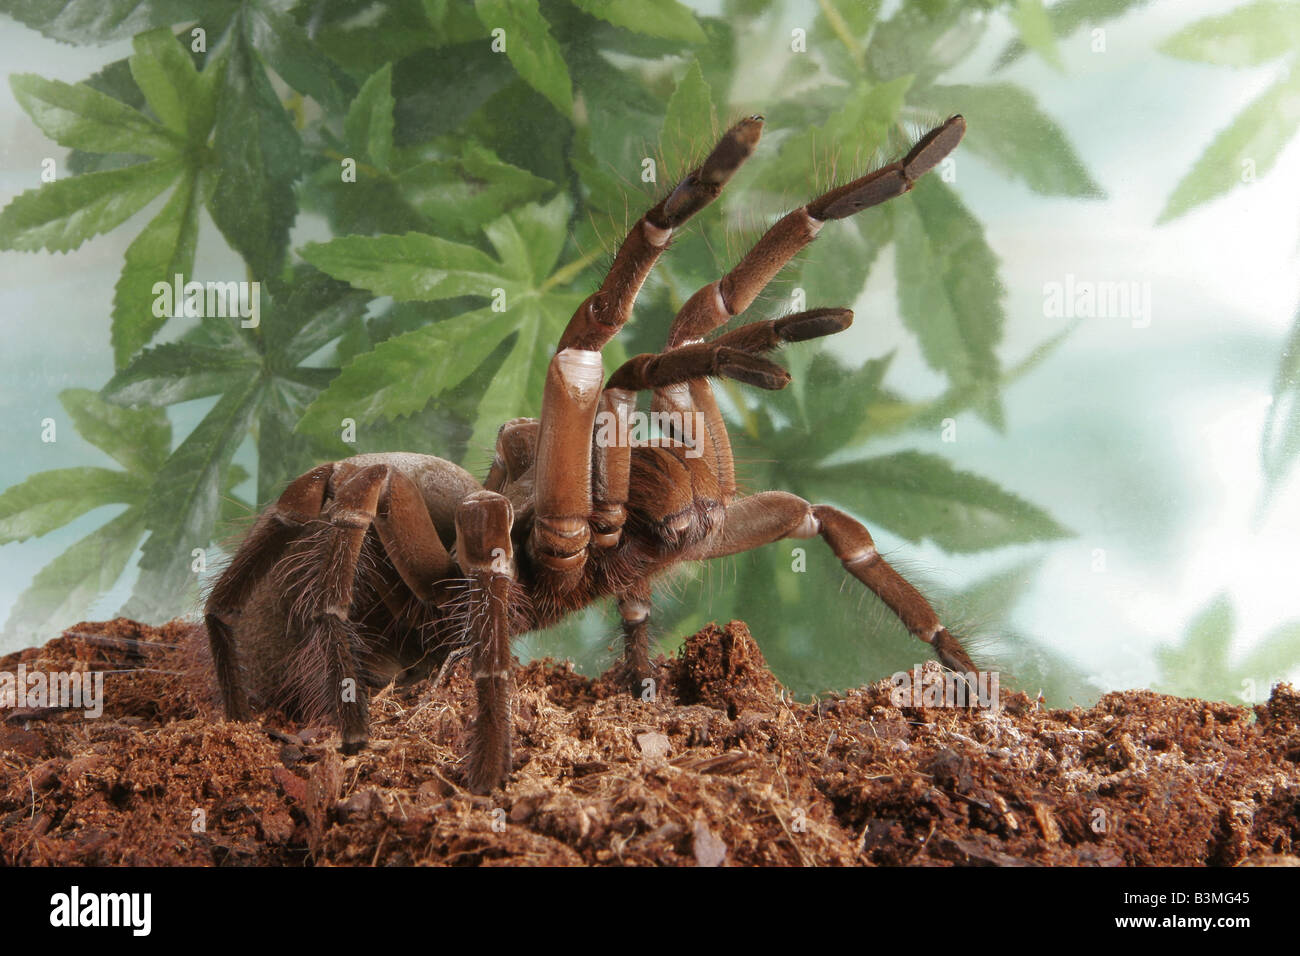 Goliath Birdeater (Theraphosa blondi), la plus grande araignée du monde Banque D'Images